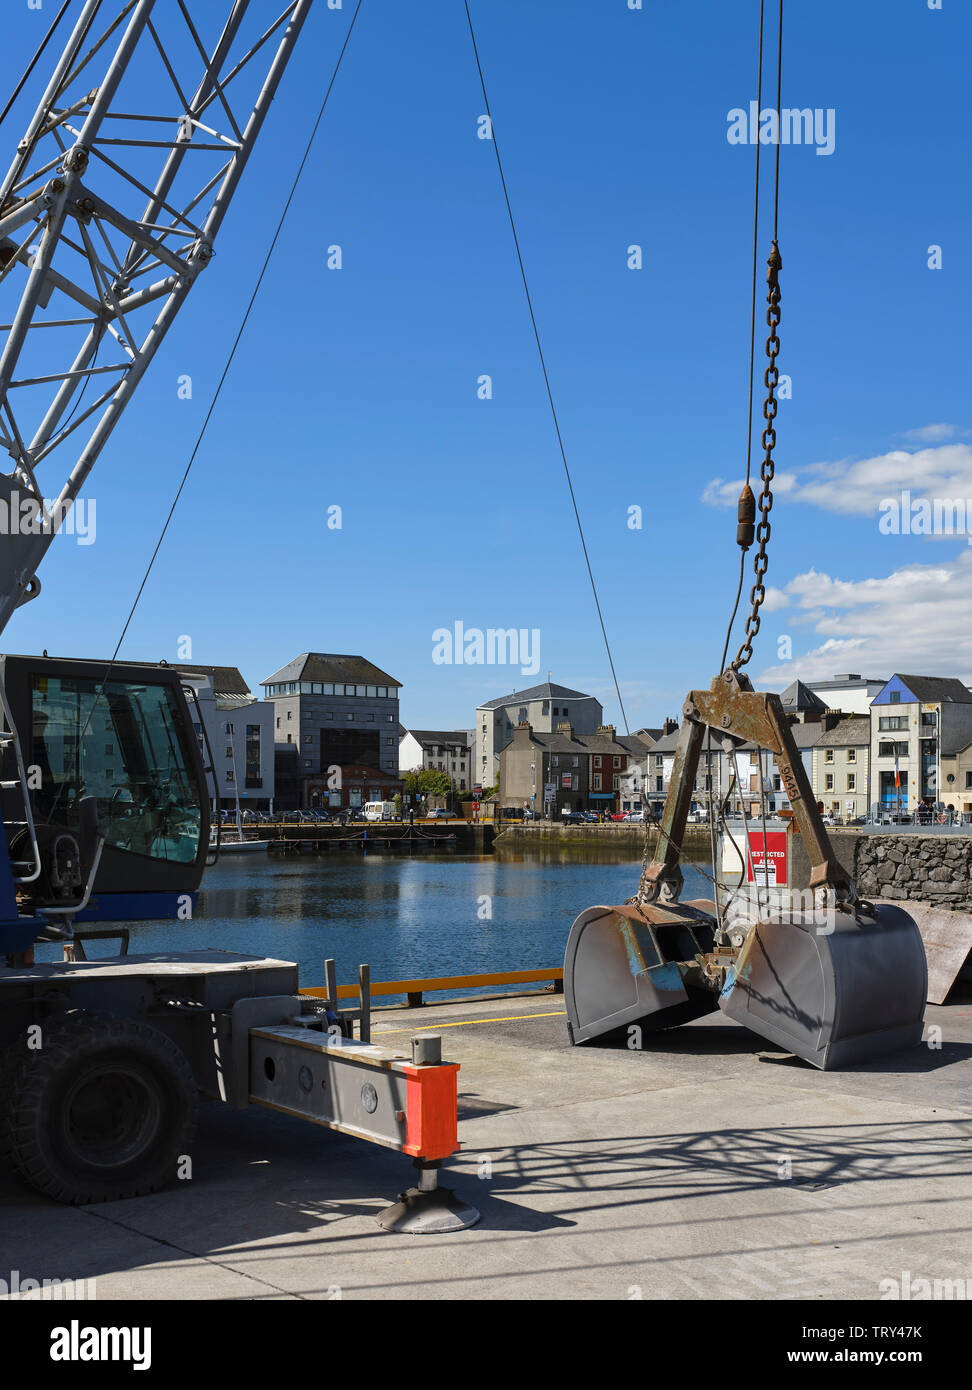 Vue éloignée du contexte à l'échelle du bassin du dock. Pálás Cinéma, Galway, Irlande. Architecte : dePaor, 2017. Banque D'Images